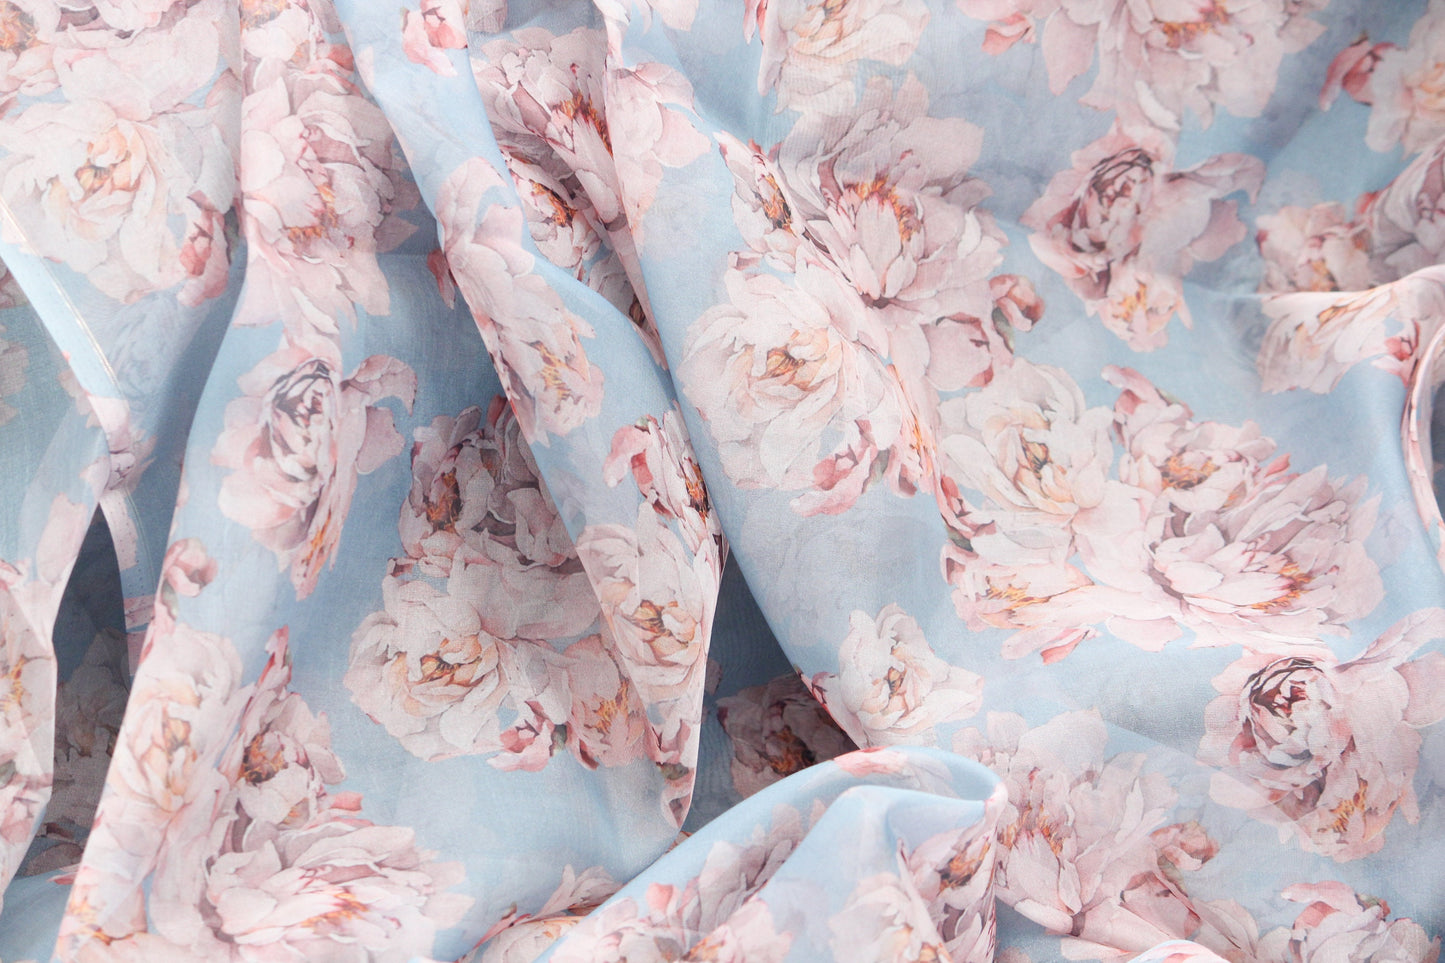 Mirror Organza - Fabric by the yard - 430 Peach - Prestige Linens